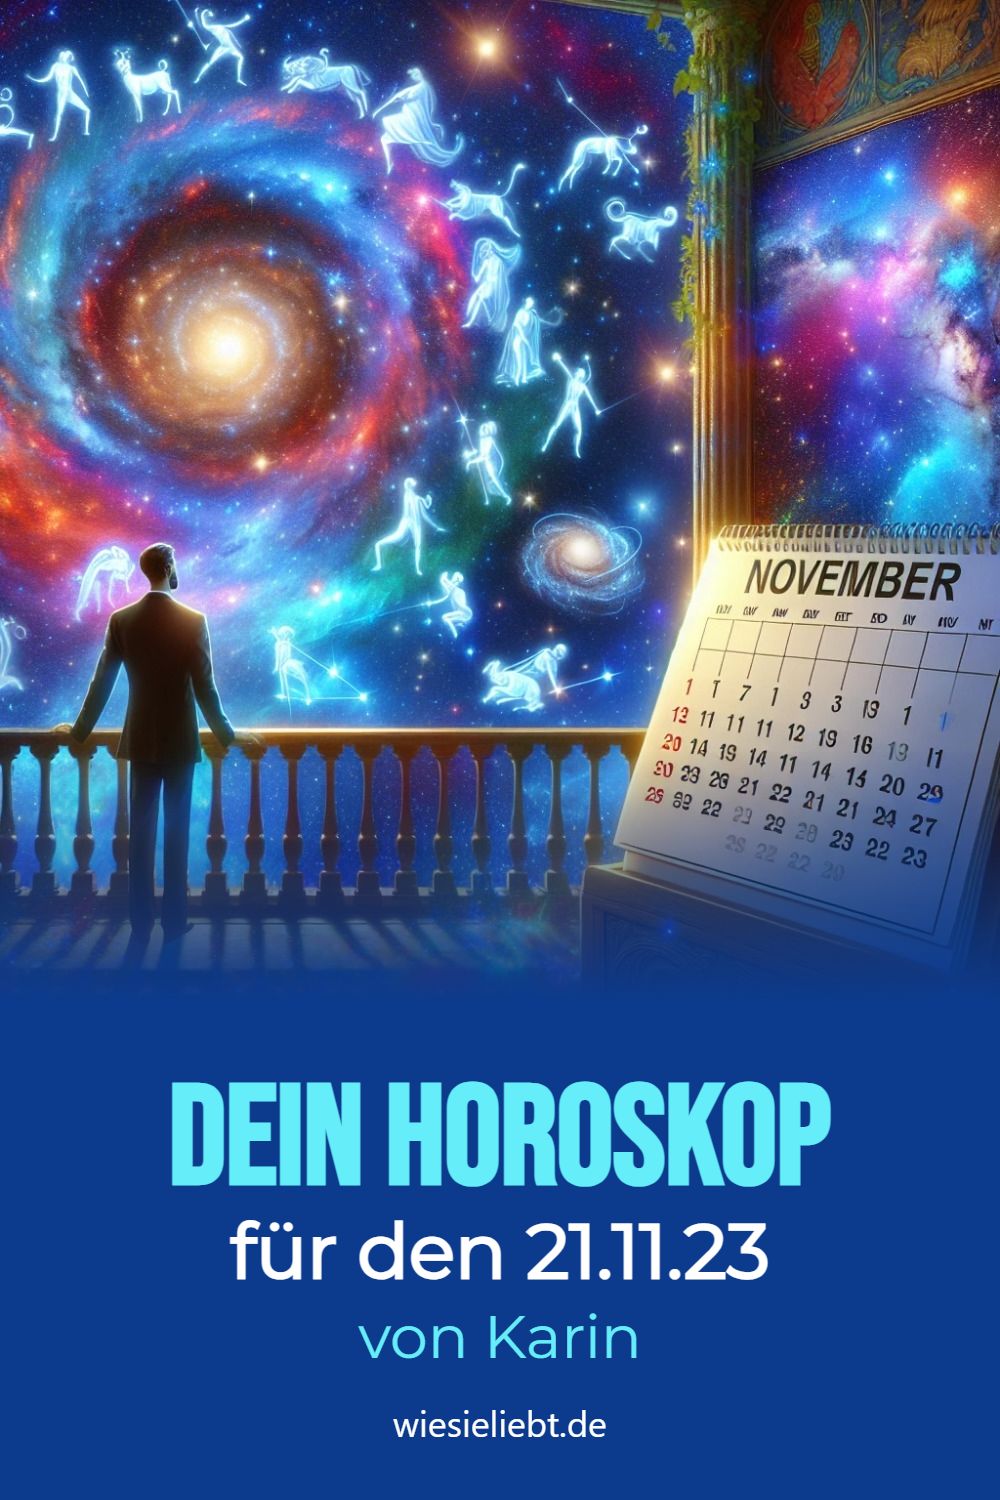 Dein Horoskop für den 22.11.23 von Karin